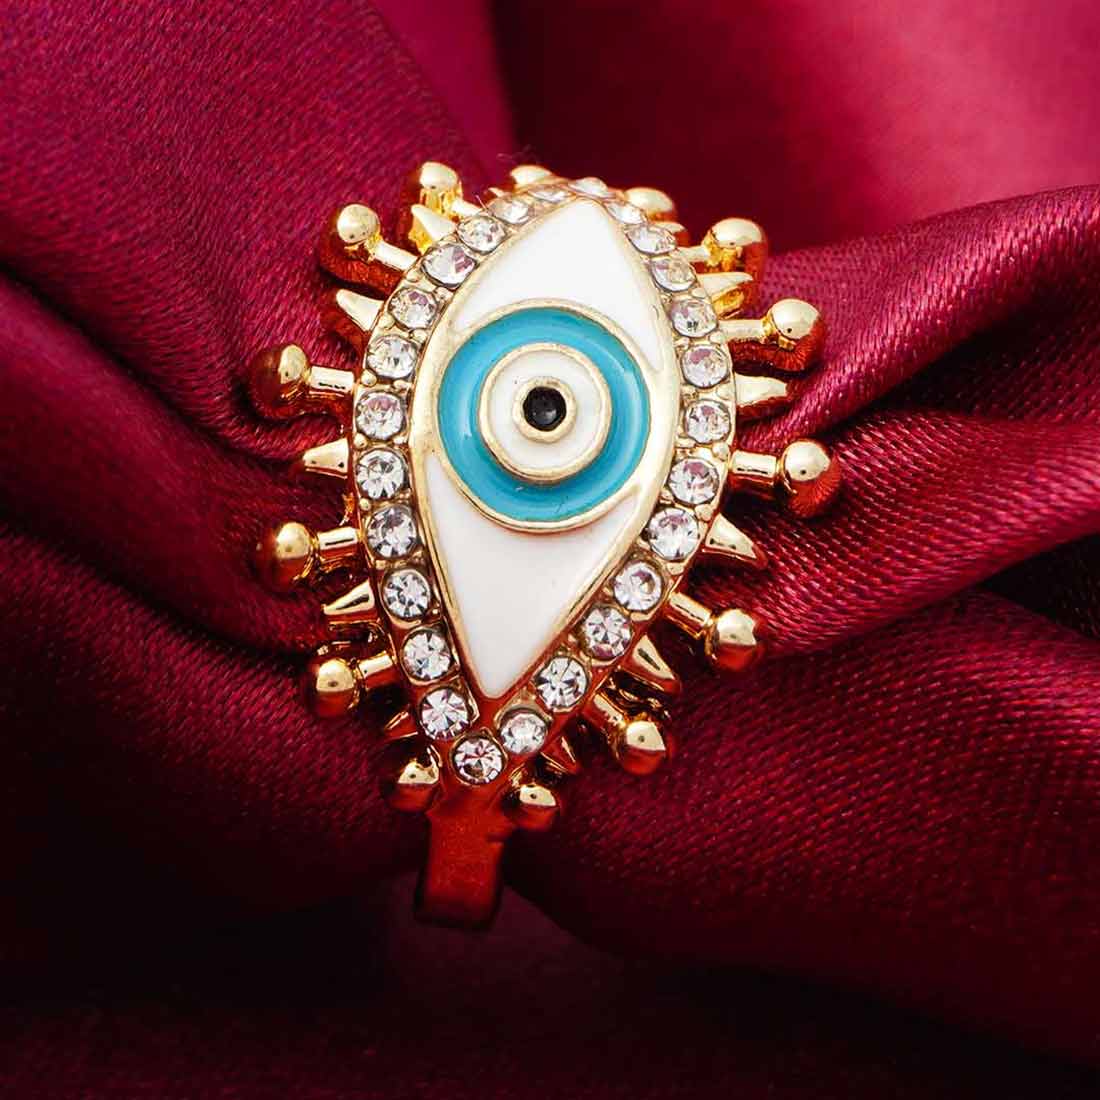 Spiky Evil Eye Ring
